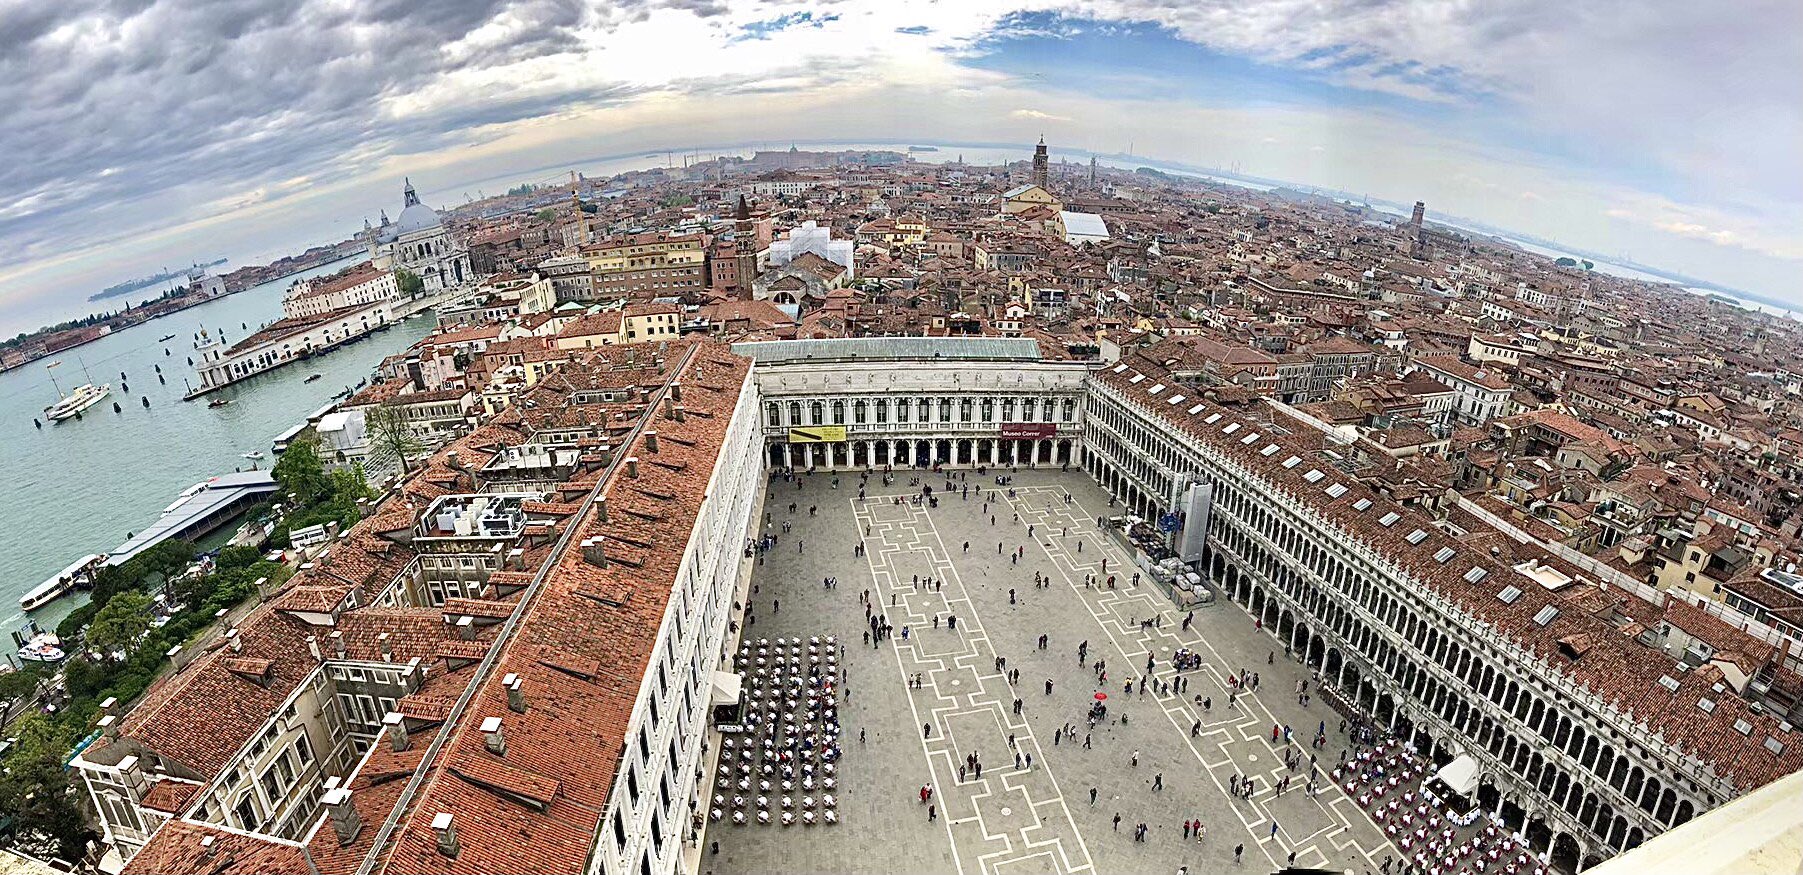 旅人 イタリア ヴェネツィア 1 ヴェネツィアの街並み 2 サンマルコ寺院と鐘楼 3 鐘楼からヴェネツィアを一望 鐘楼に登ると360 ヴェネツィアを一望できます イタリア ヴェネツィア 水の都 サン マルコ広場 サン マルコ寺院 鐘楼 海外旅行